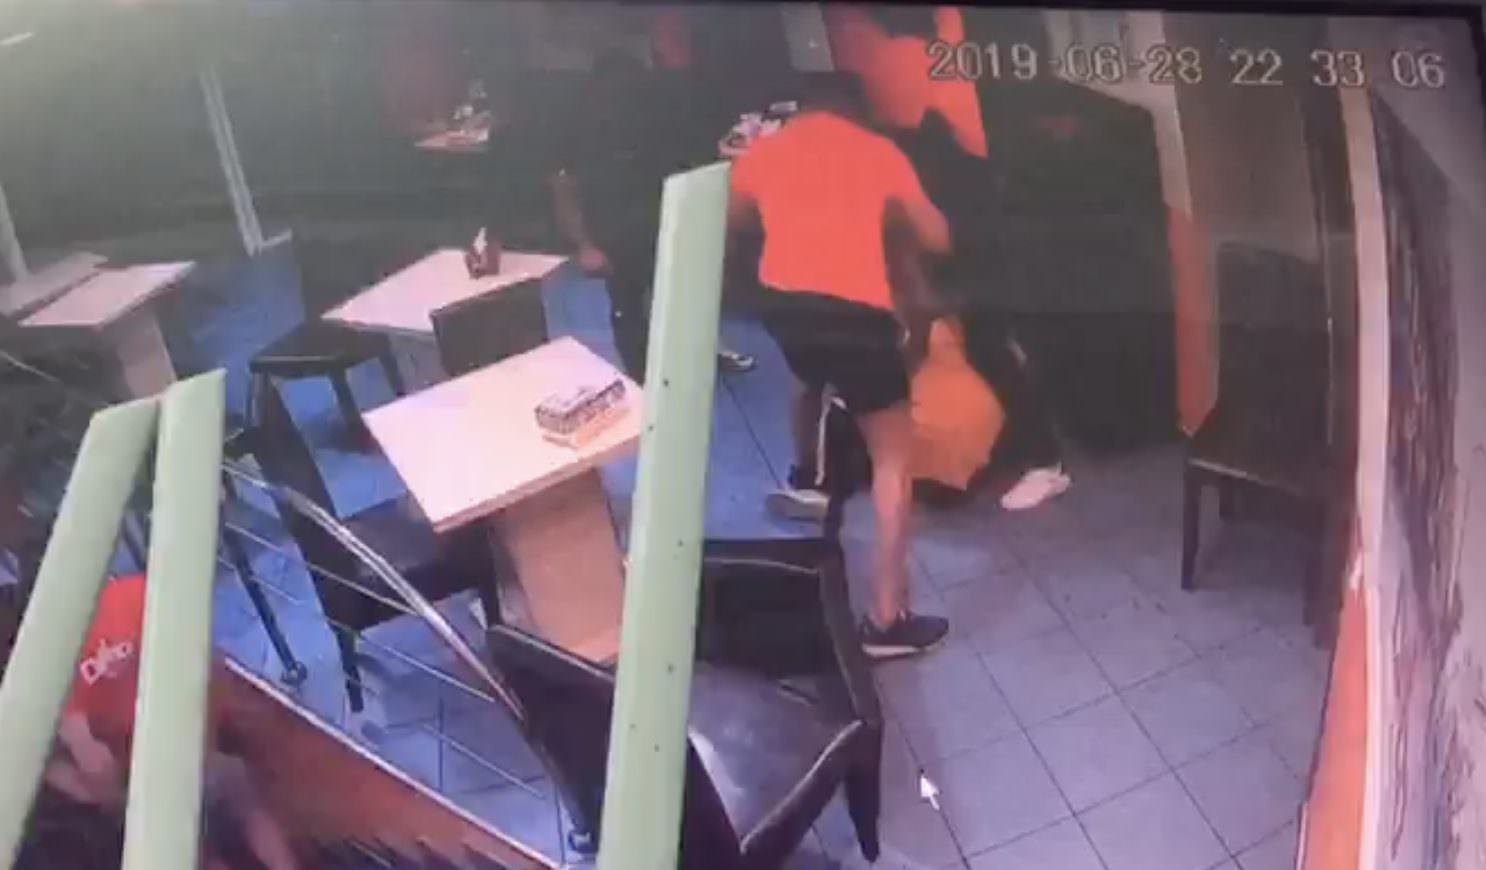 video - scandalul de la fast food în sibiu - bărbat snopit în bătaie de alte trei persoane (imagini dure)